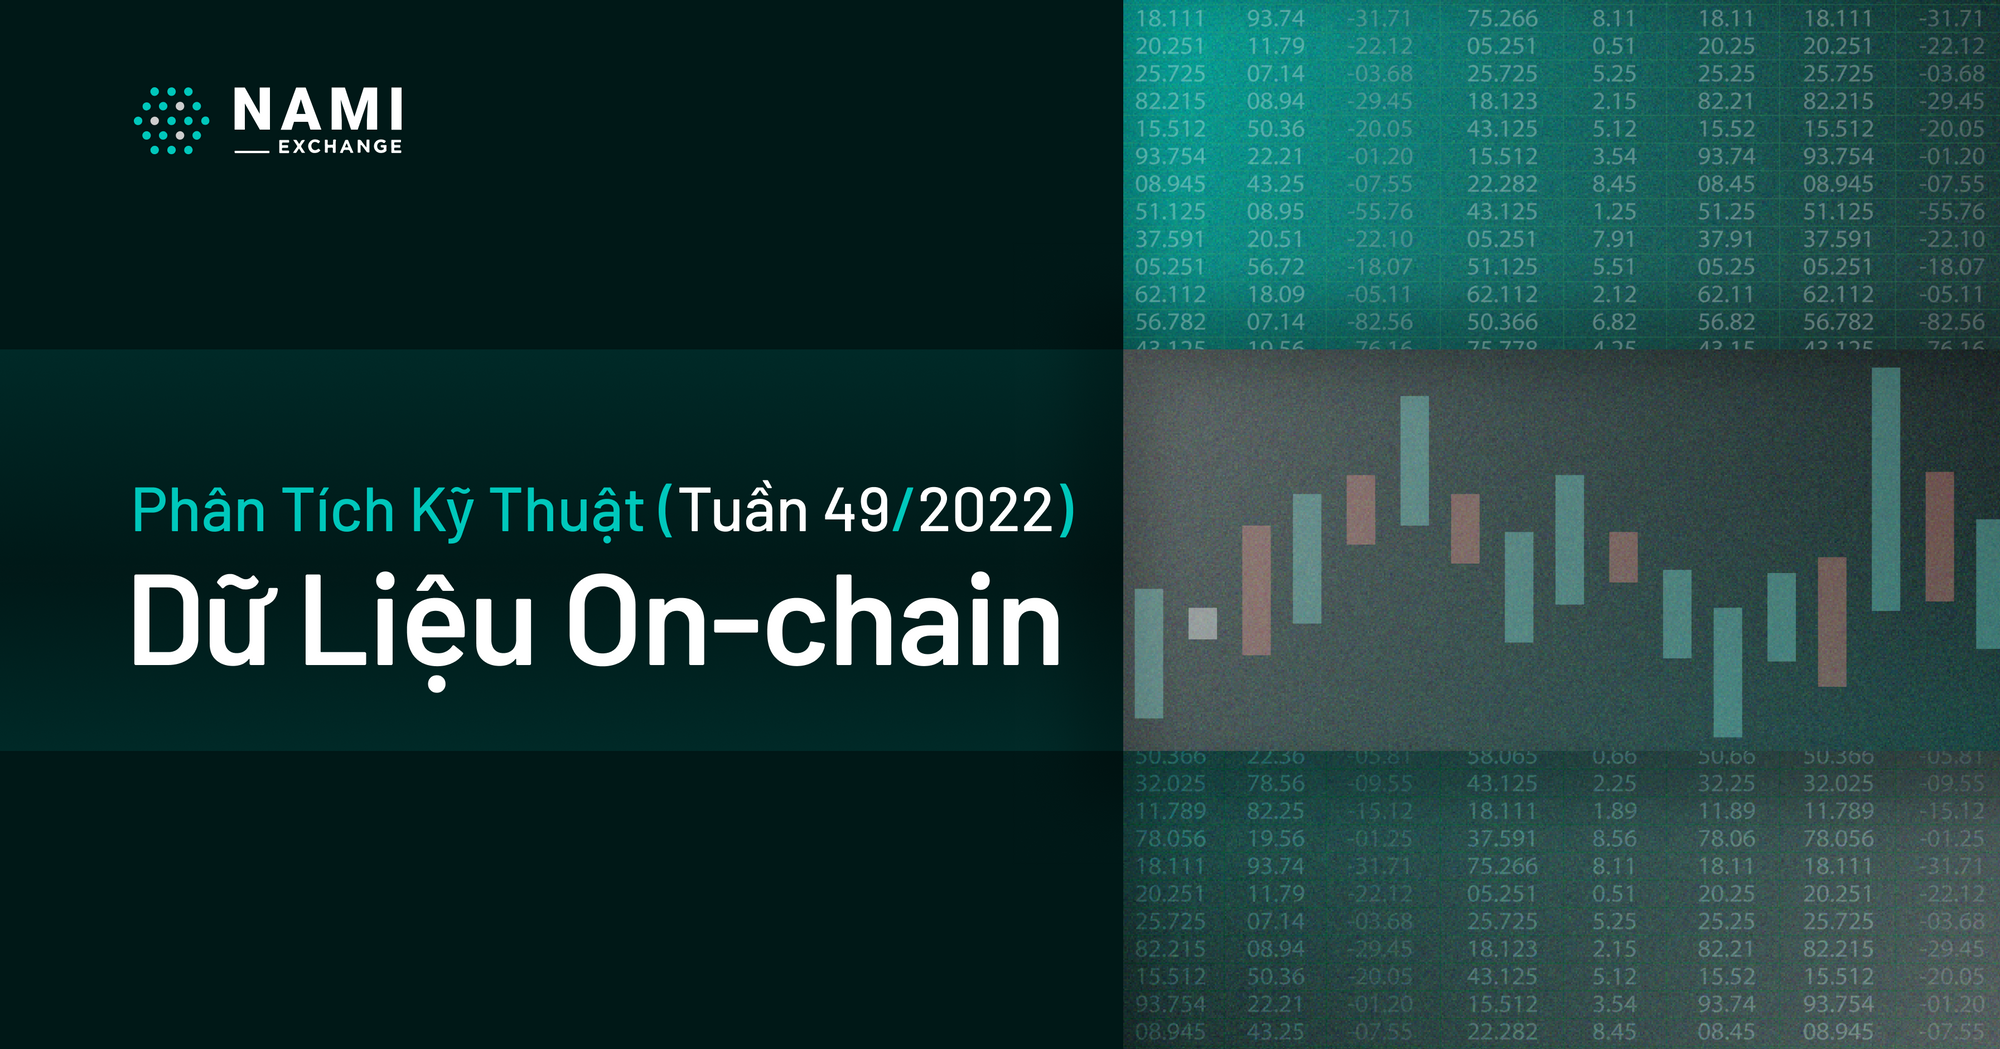 Phân tích dữ liệu On-chain (Tuần 49/2022)